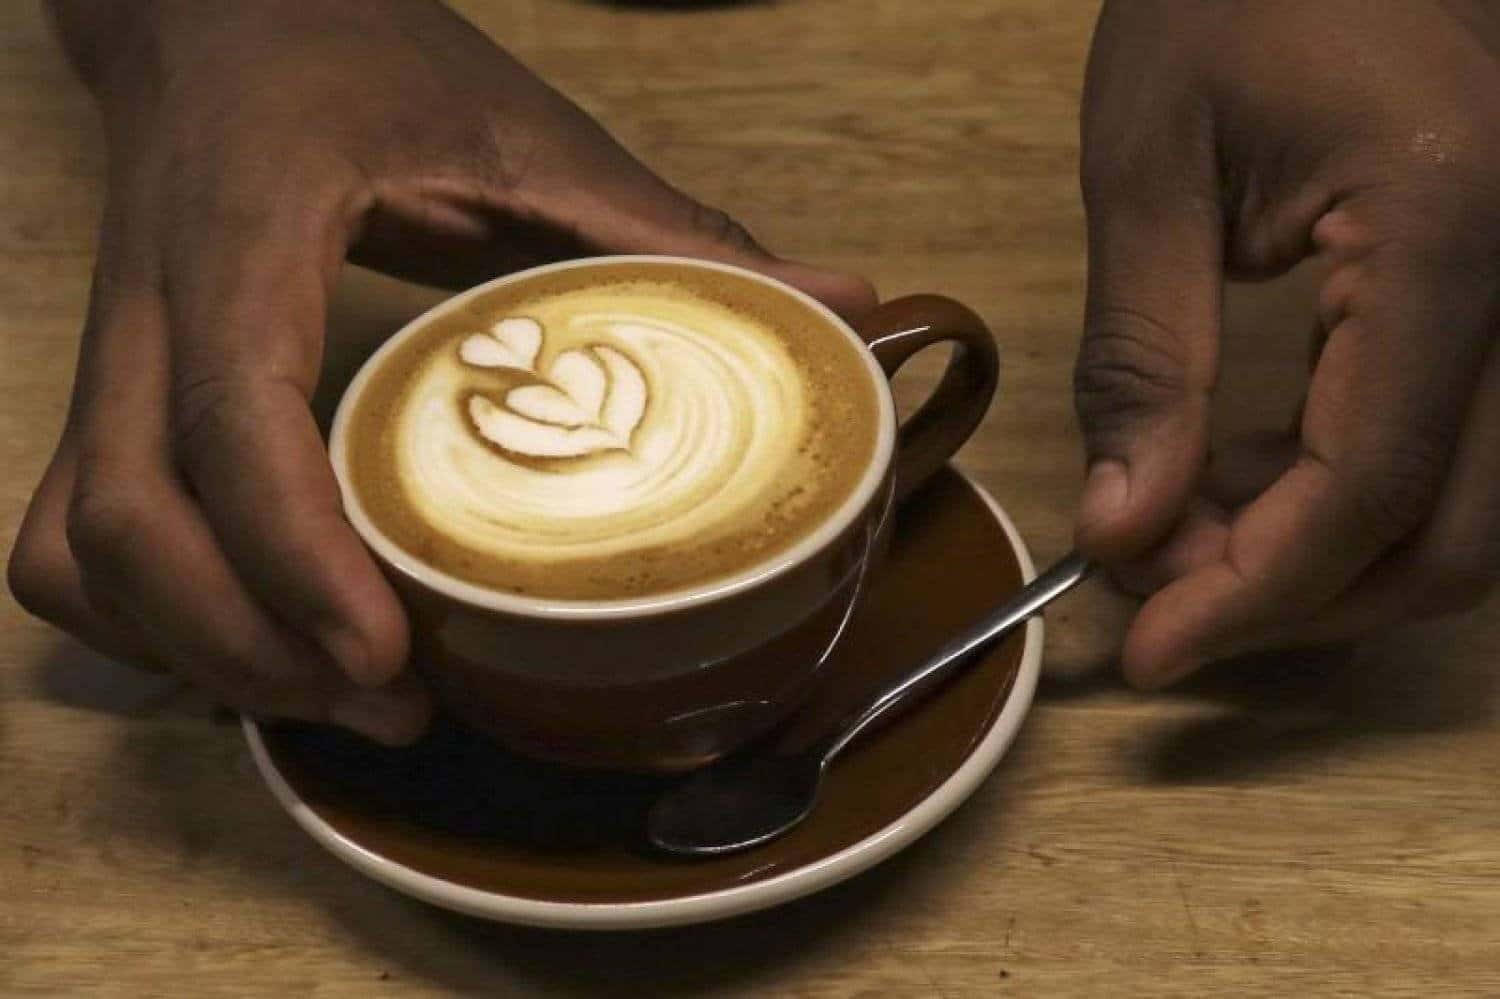   تحت المجهر: هل تُخبئ القهوة منزوعة الكافيين مخاطر صحية وراء مذاقها اللذيذ؟ 